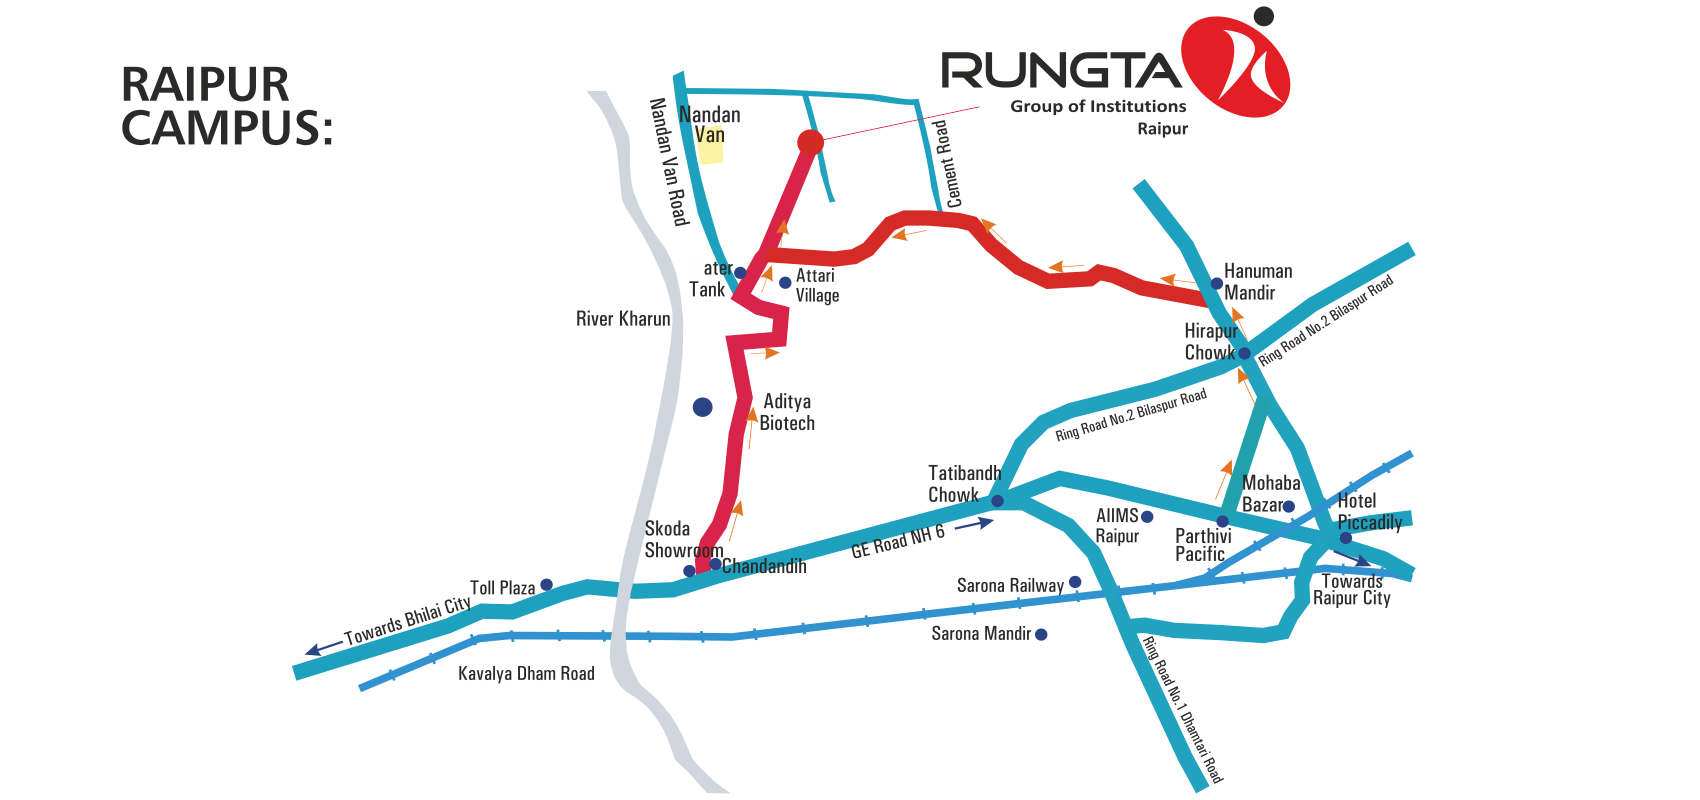 Rungta College, RAIPUR CAMPUS - ROAD MAP